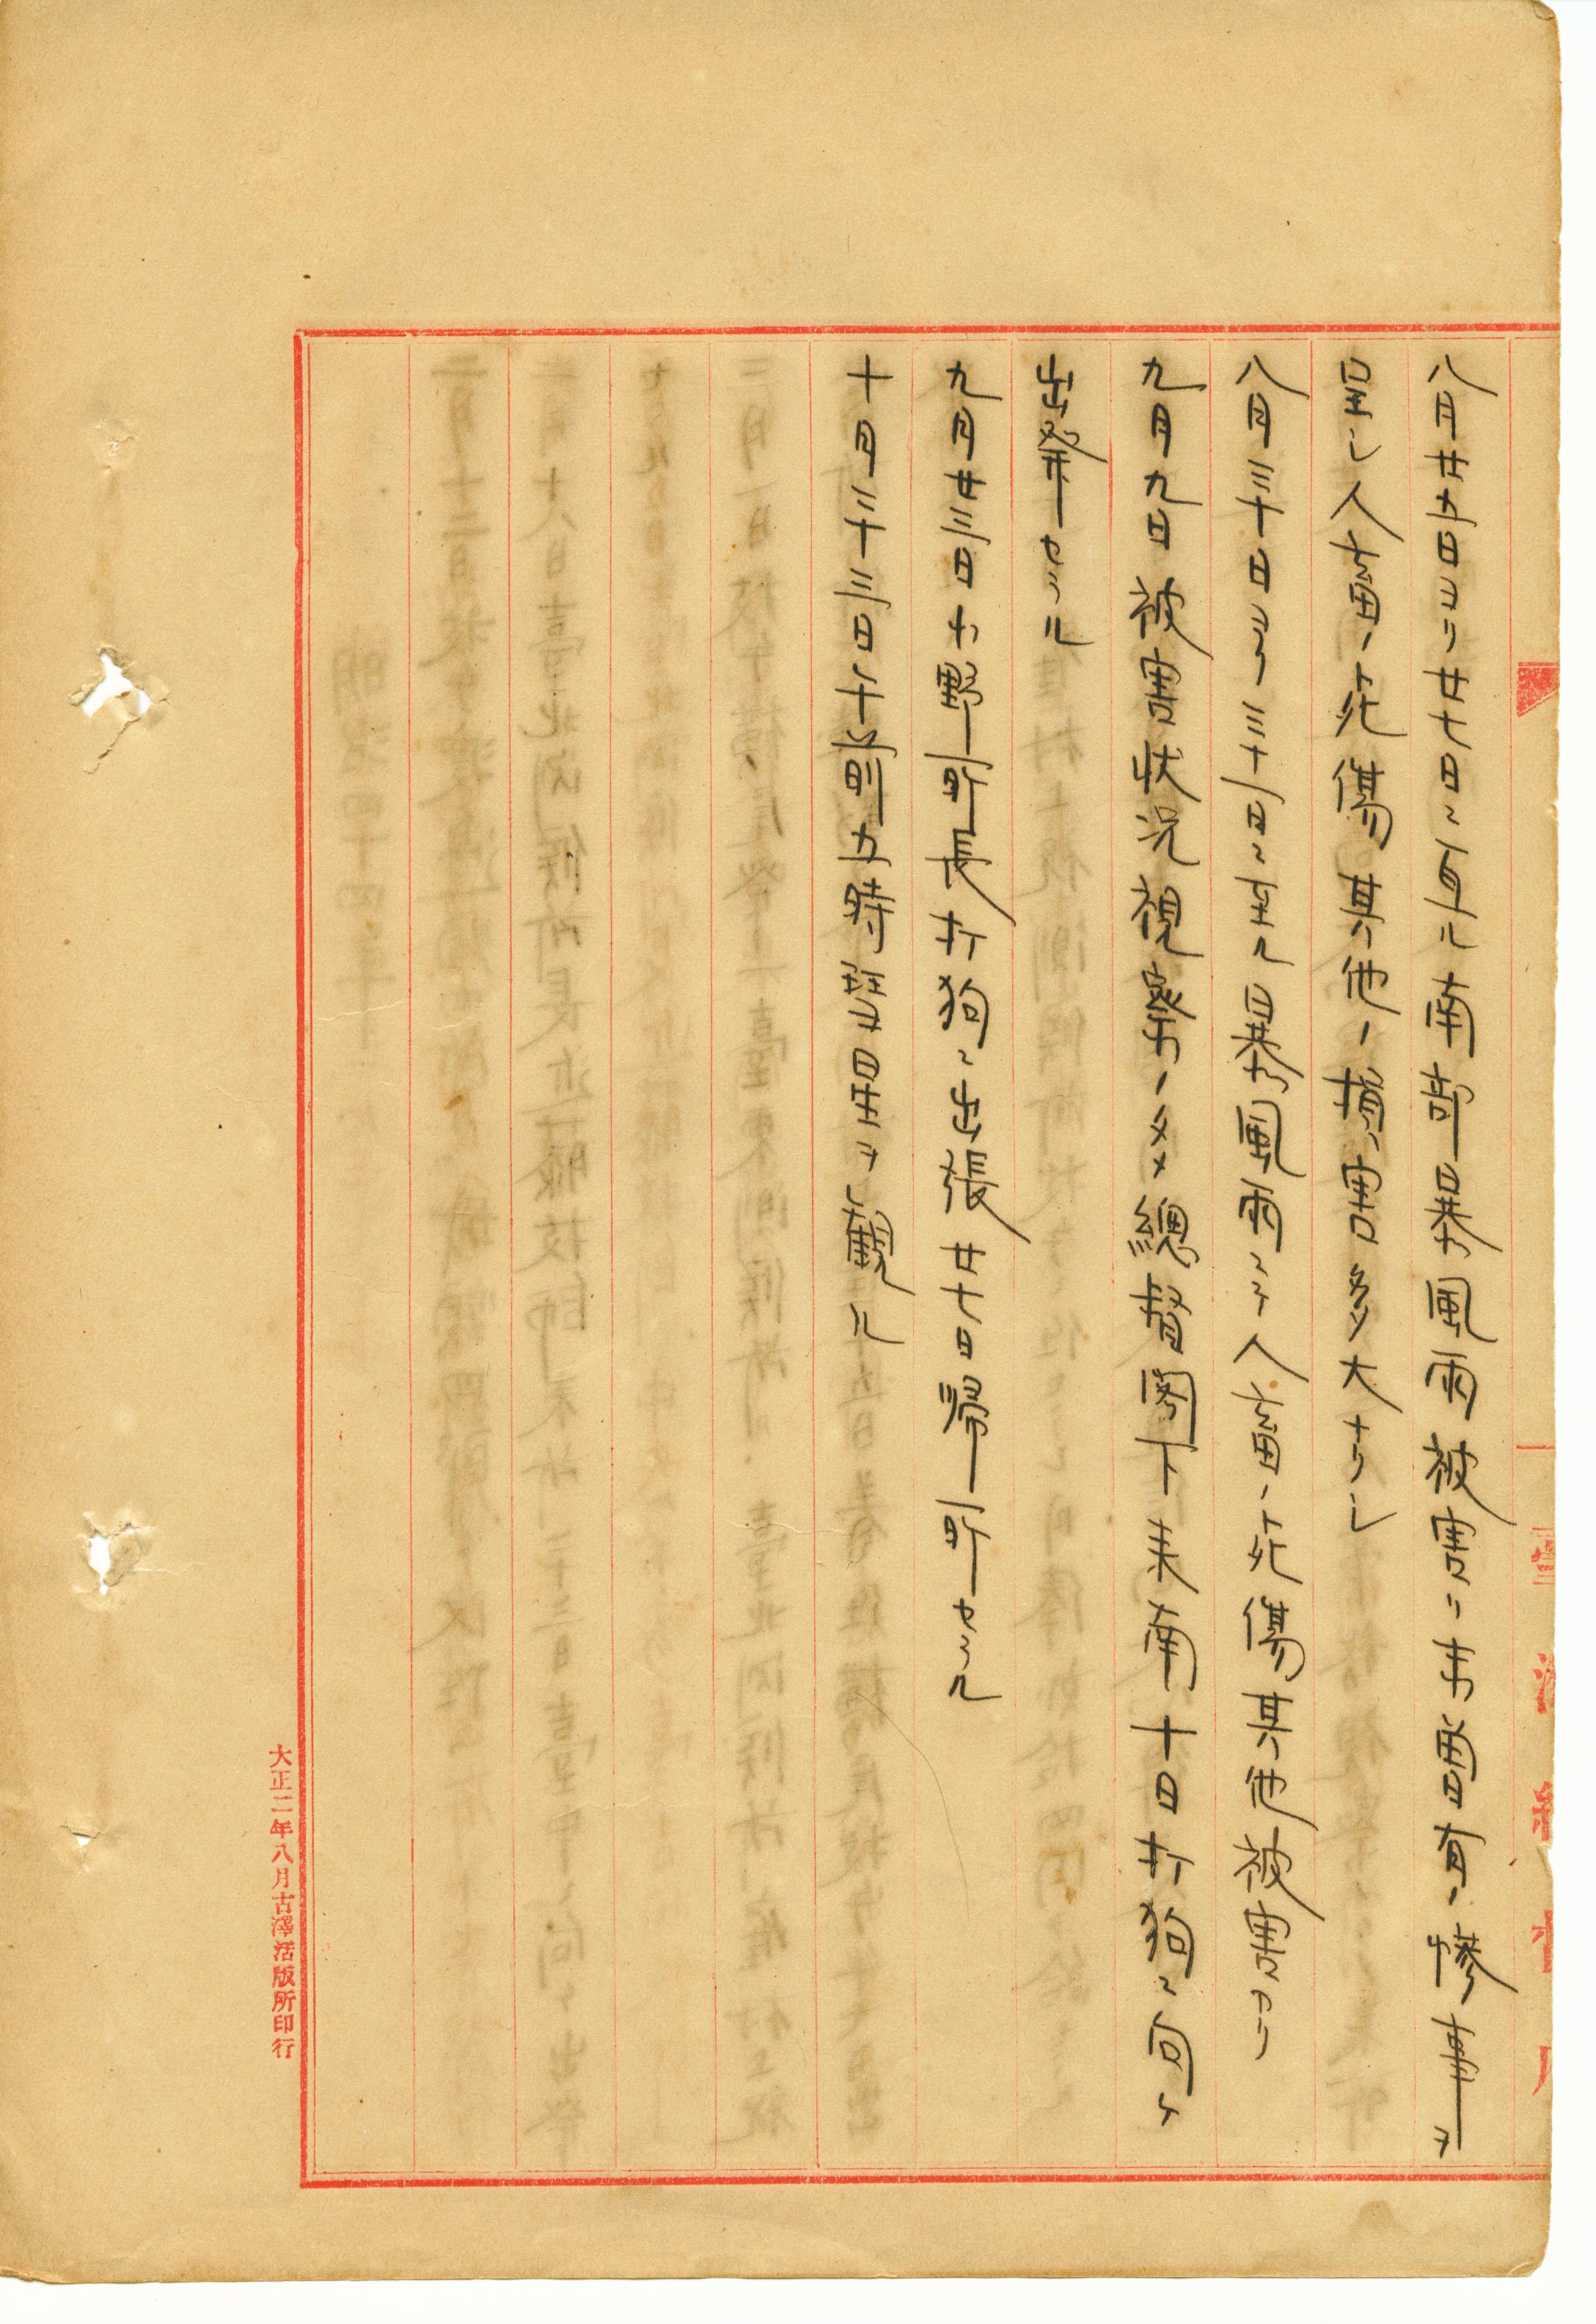 《臺南測候所沿革史》紀錄了1911年8月底暴風雨「未曾有的慘事」。